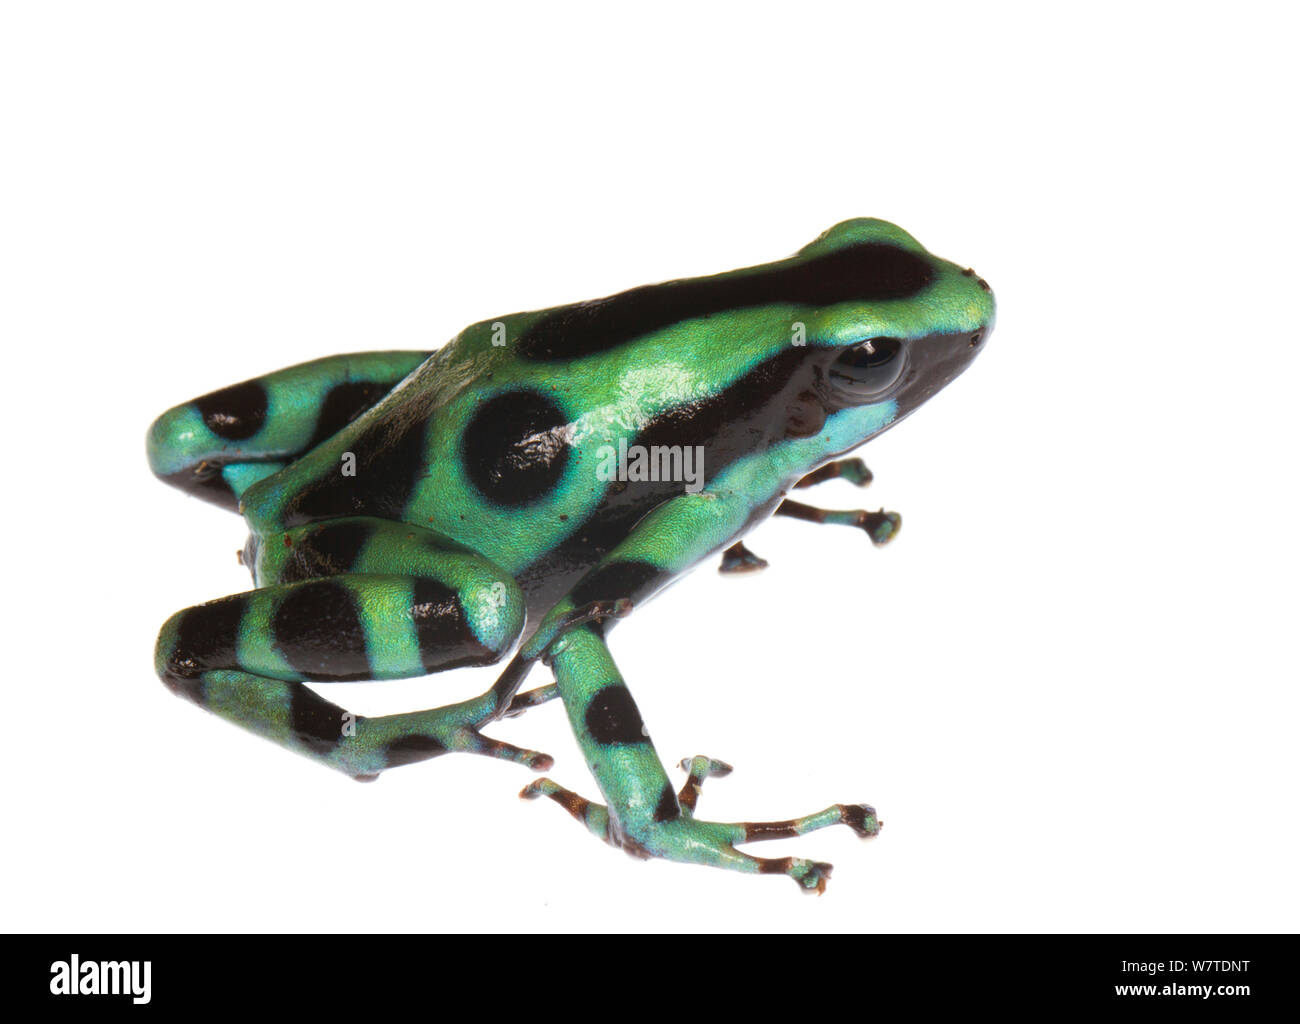 Noir et vert grenouille Poison (Dendrobates auratus) Almirante, Panama. Projet d'Meetyourneighbors.net Banque D'Images